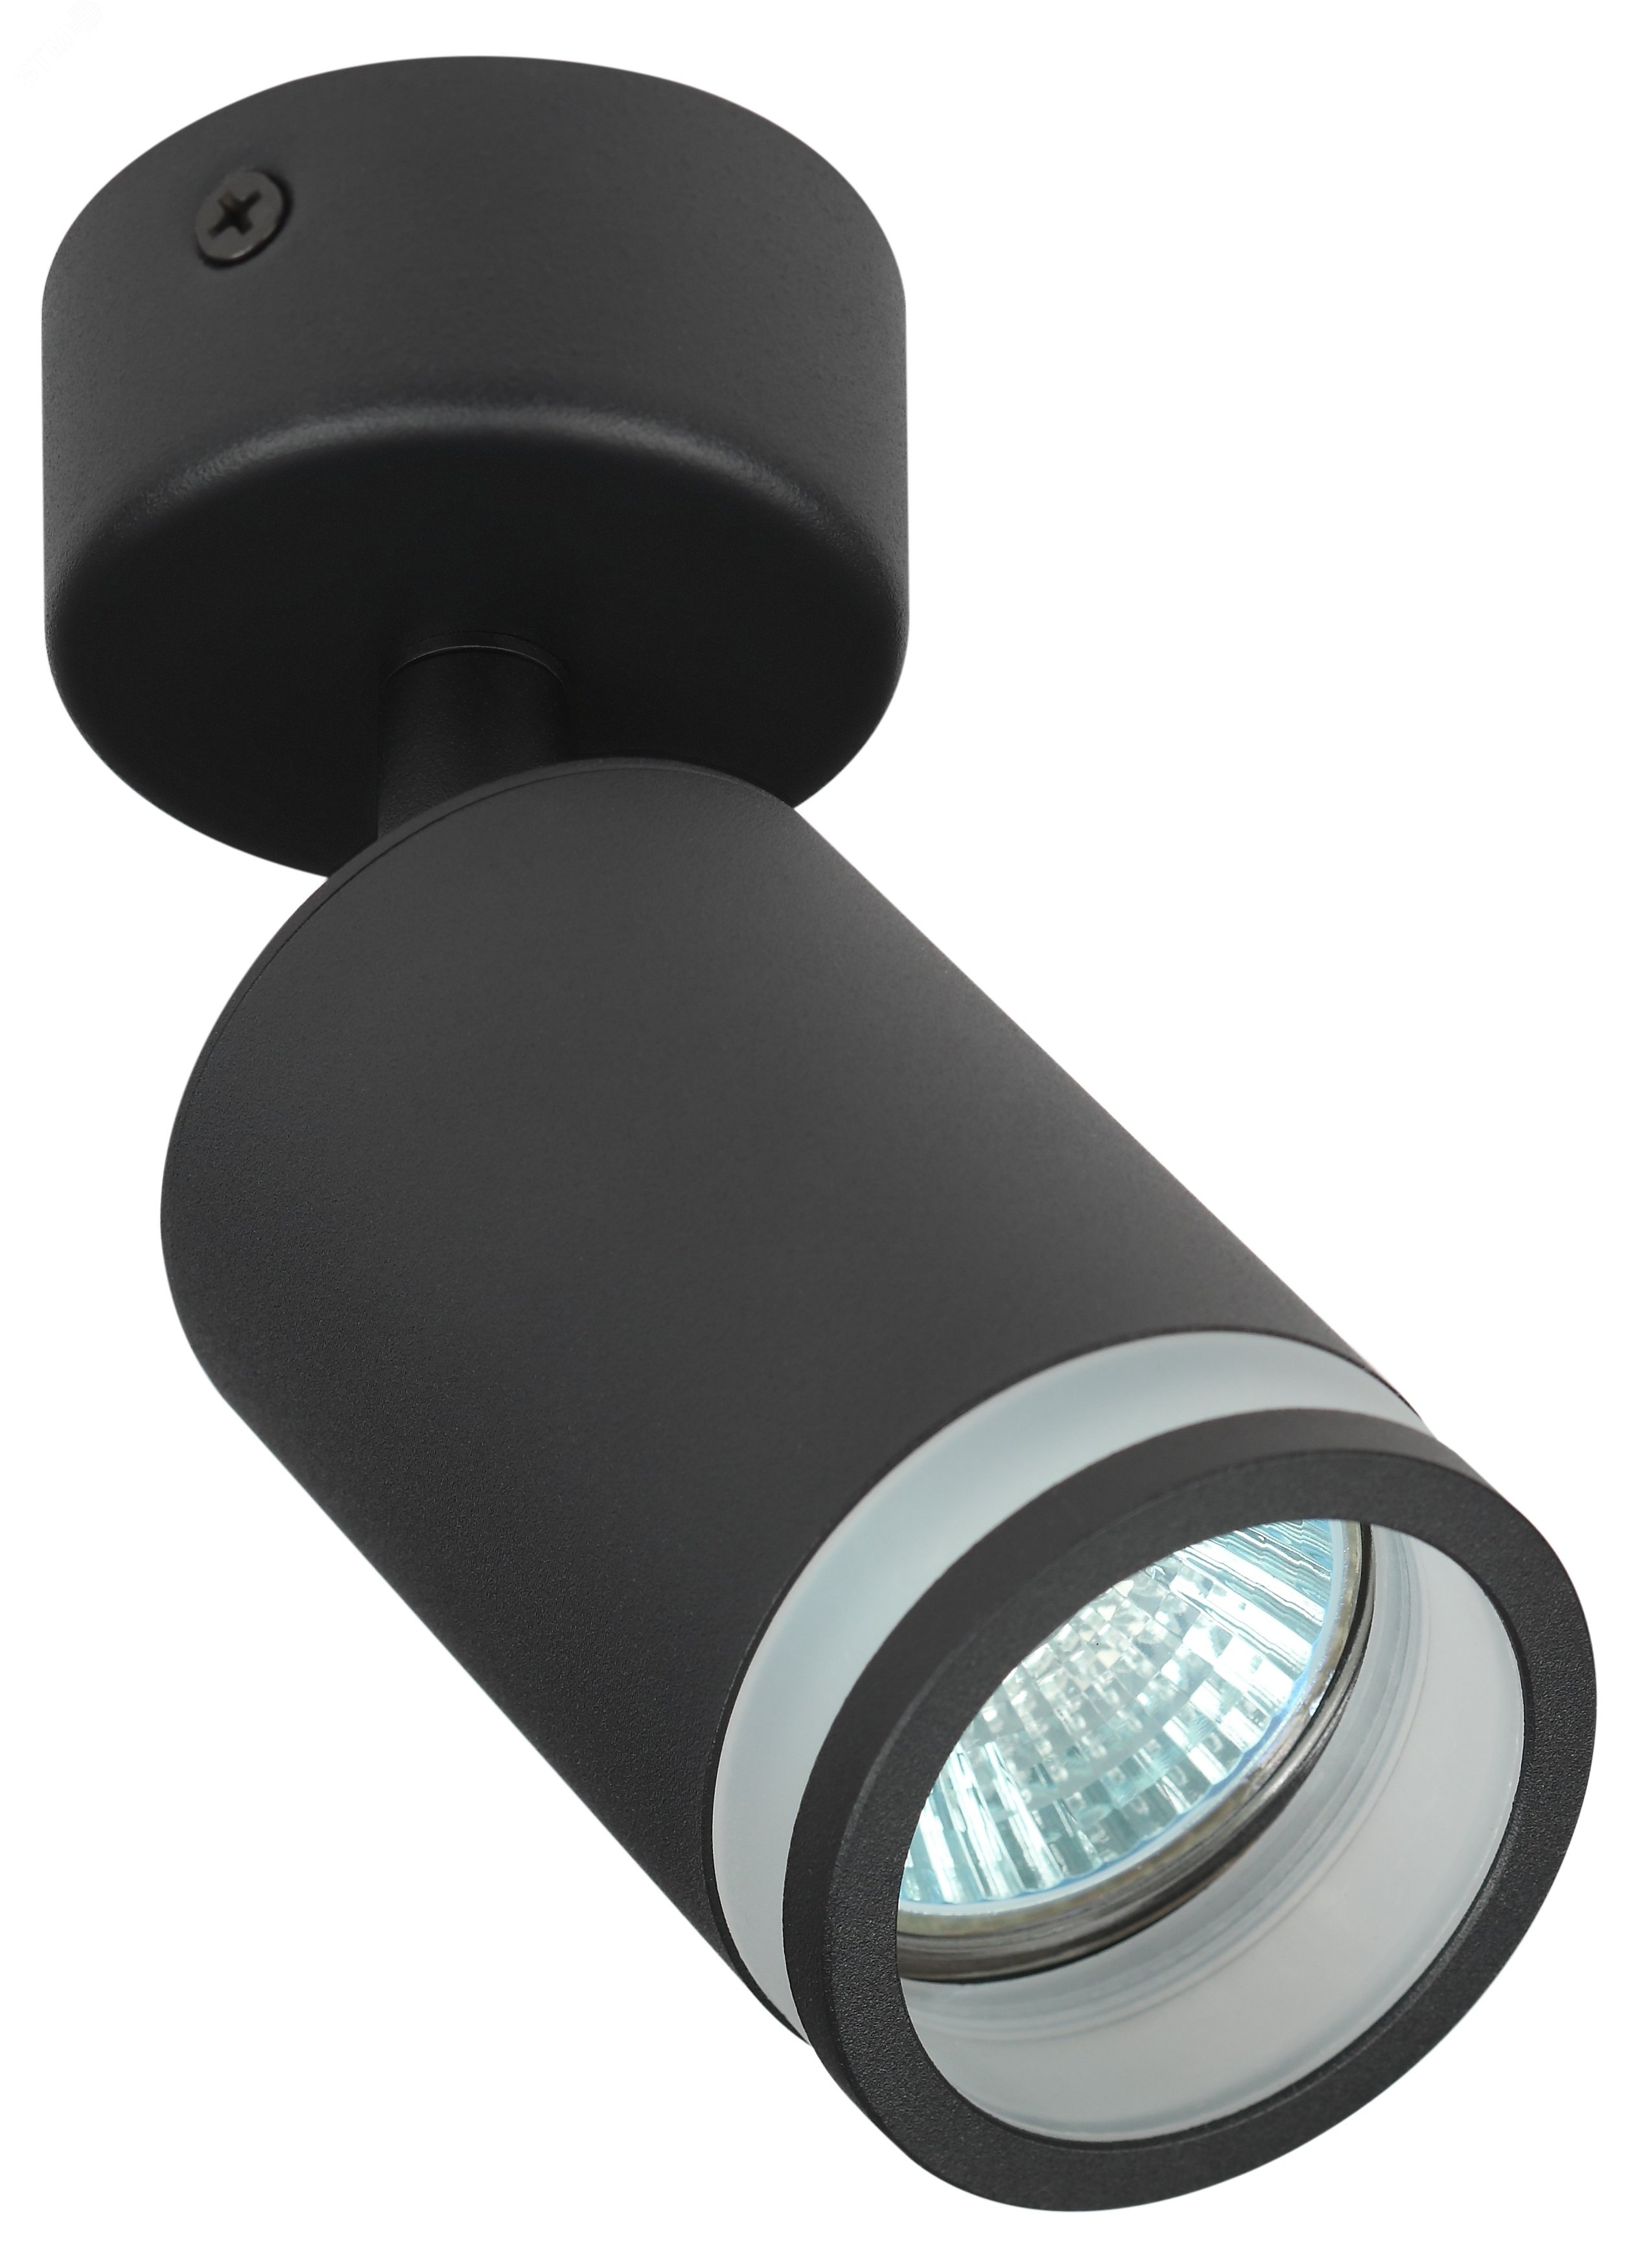 Светильник настенно-потолочный спот OL23 BK MR16/GU10, черный лампа MR16 ( в комплект не входит) Б0054397 ЭРА